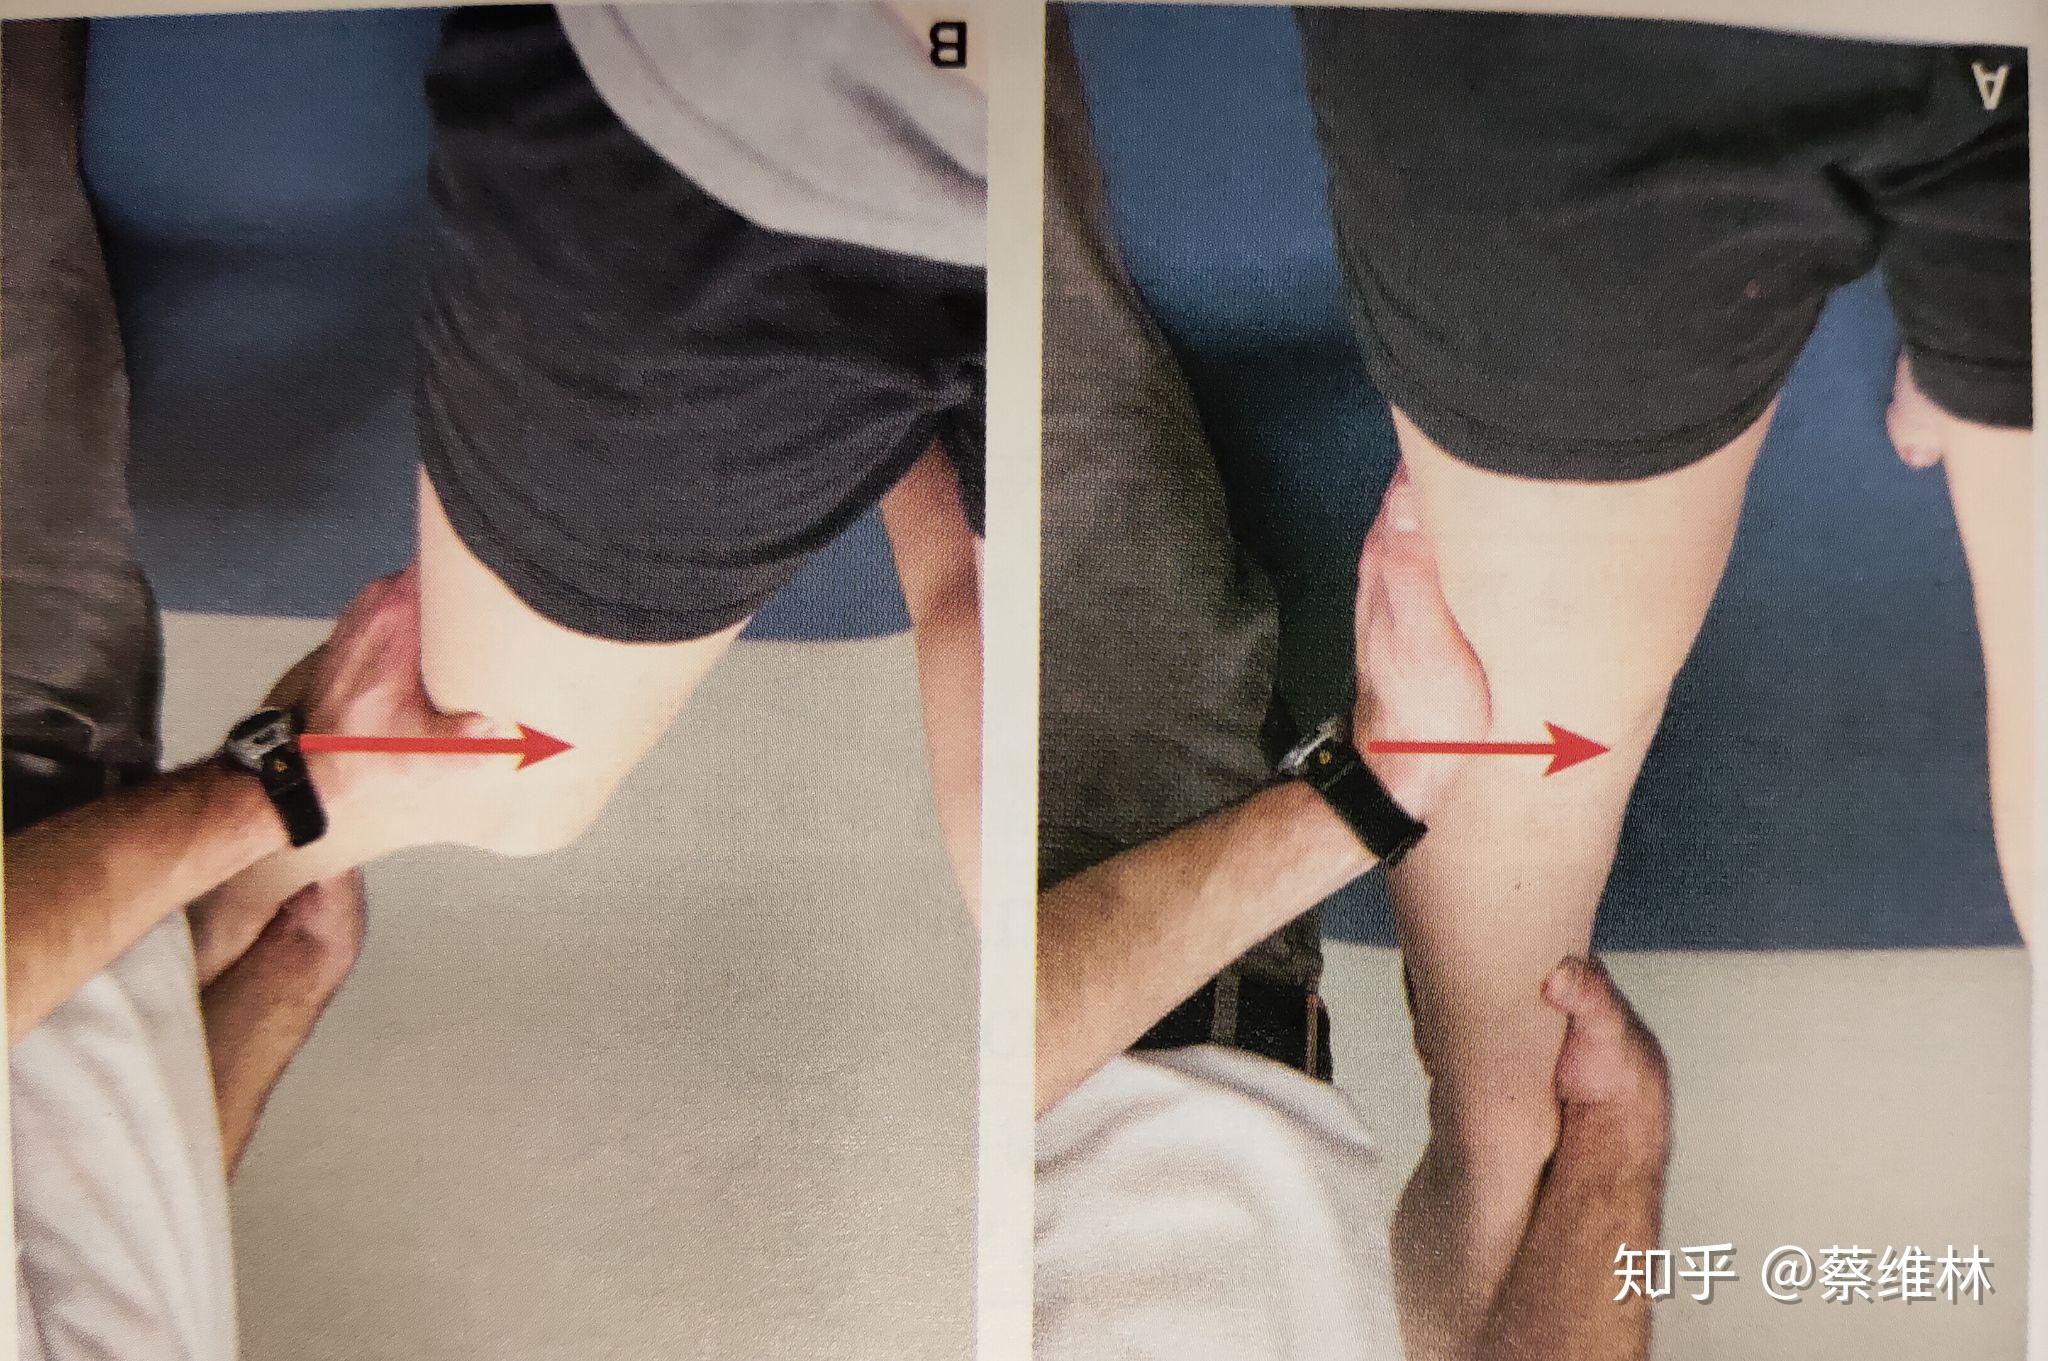 膝关节内翻应力试验图片